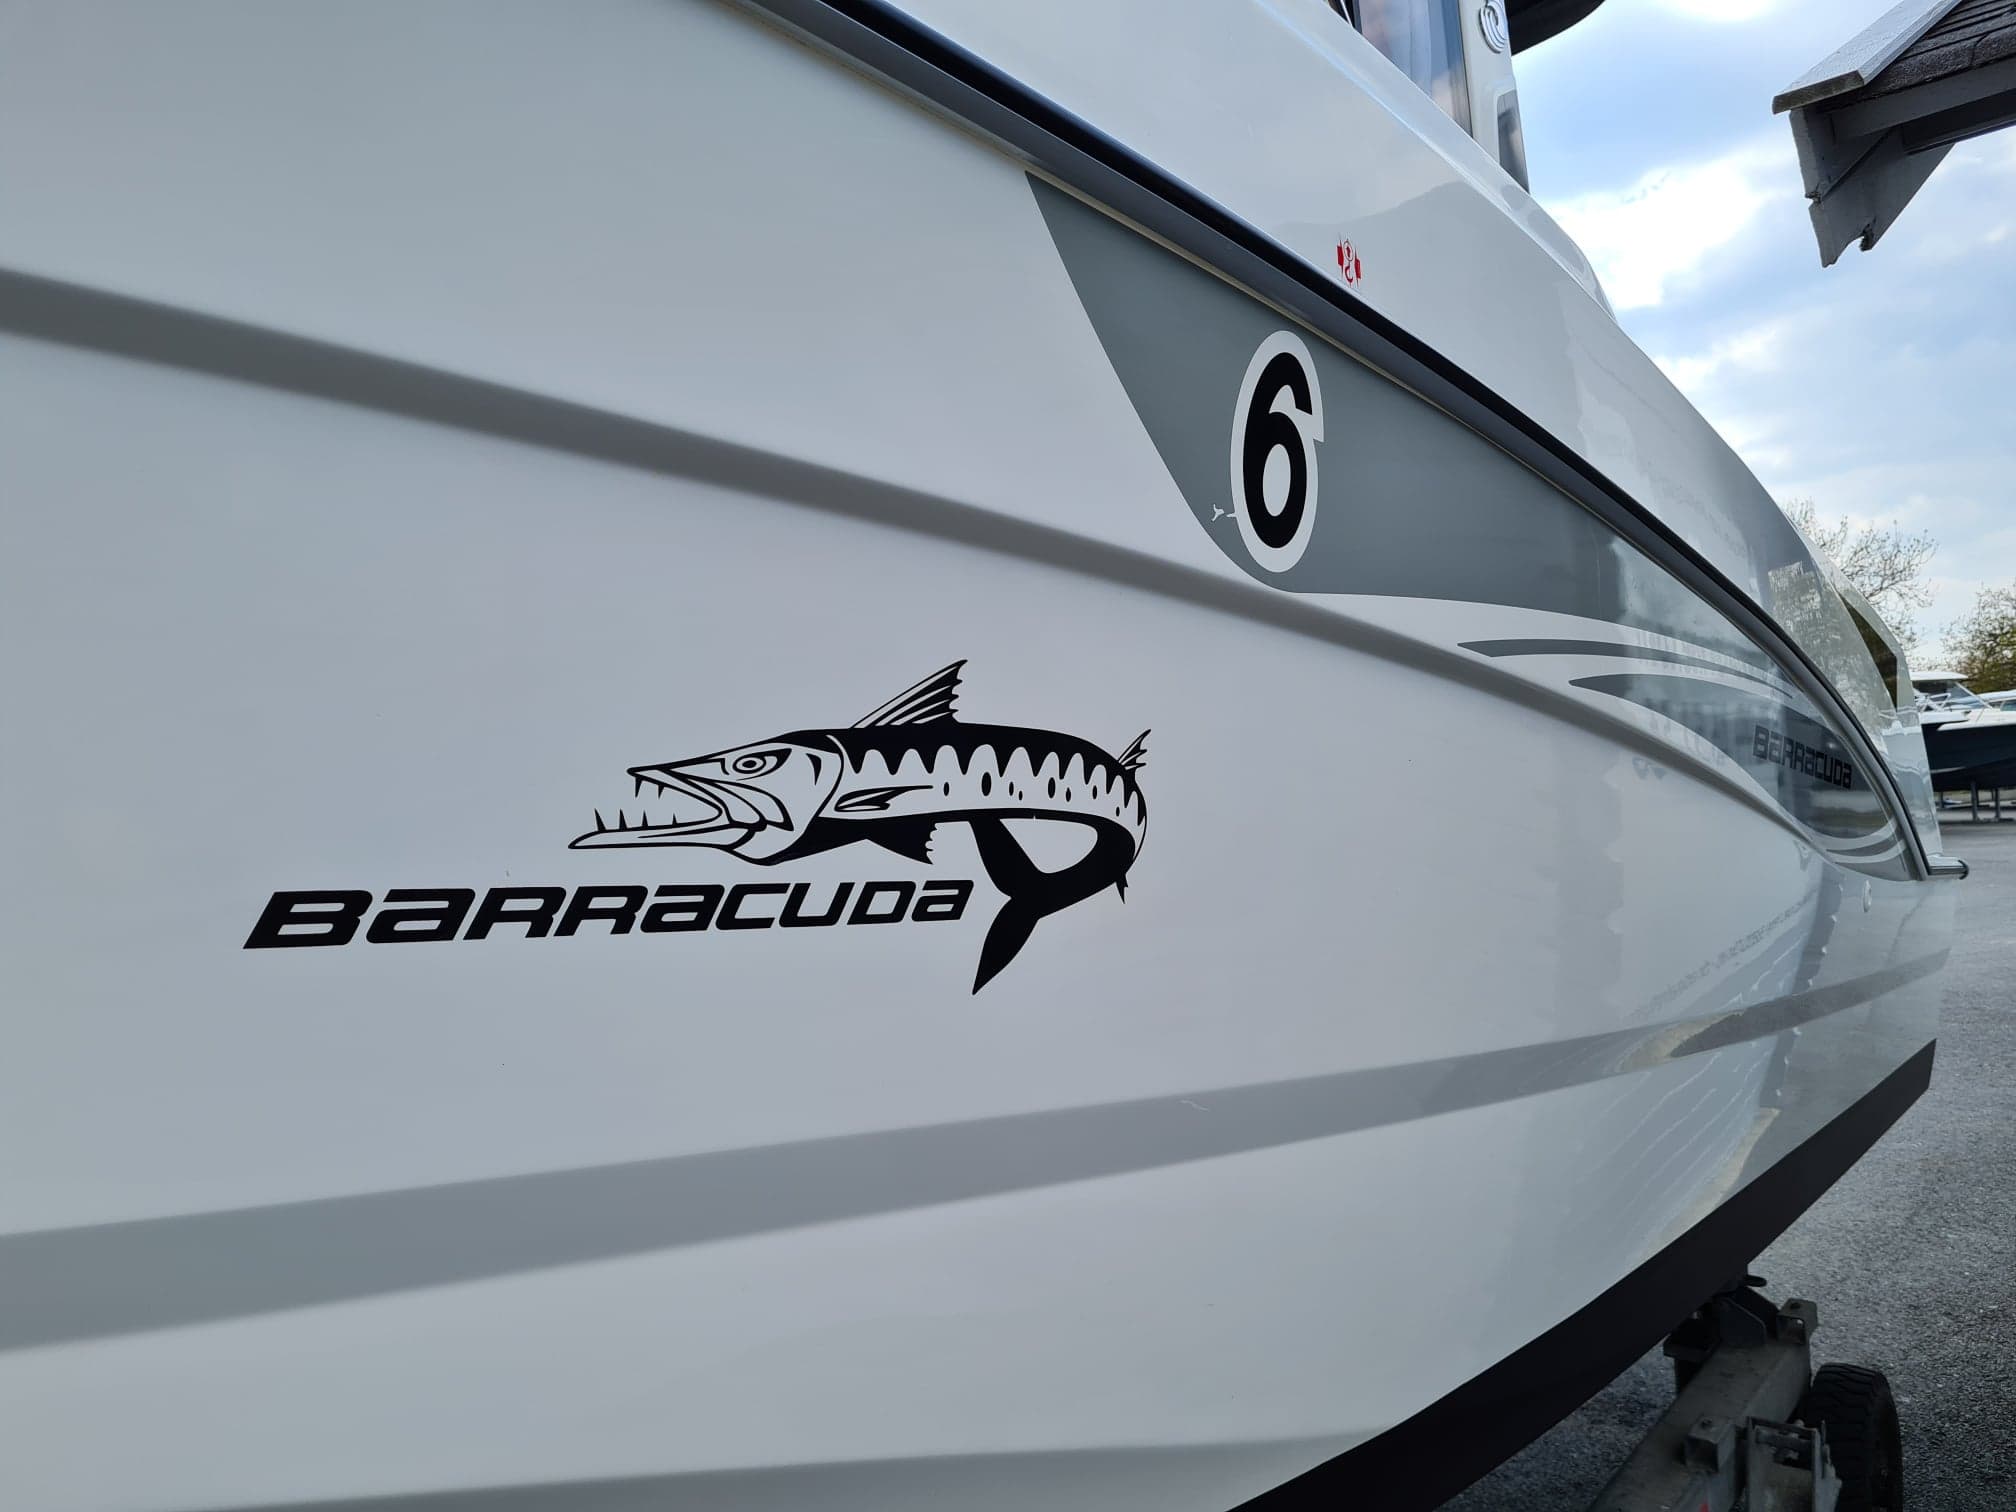 Logo Barracuda 6 chez Beneteau Barracuda 6 chez DINARD MARINE